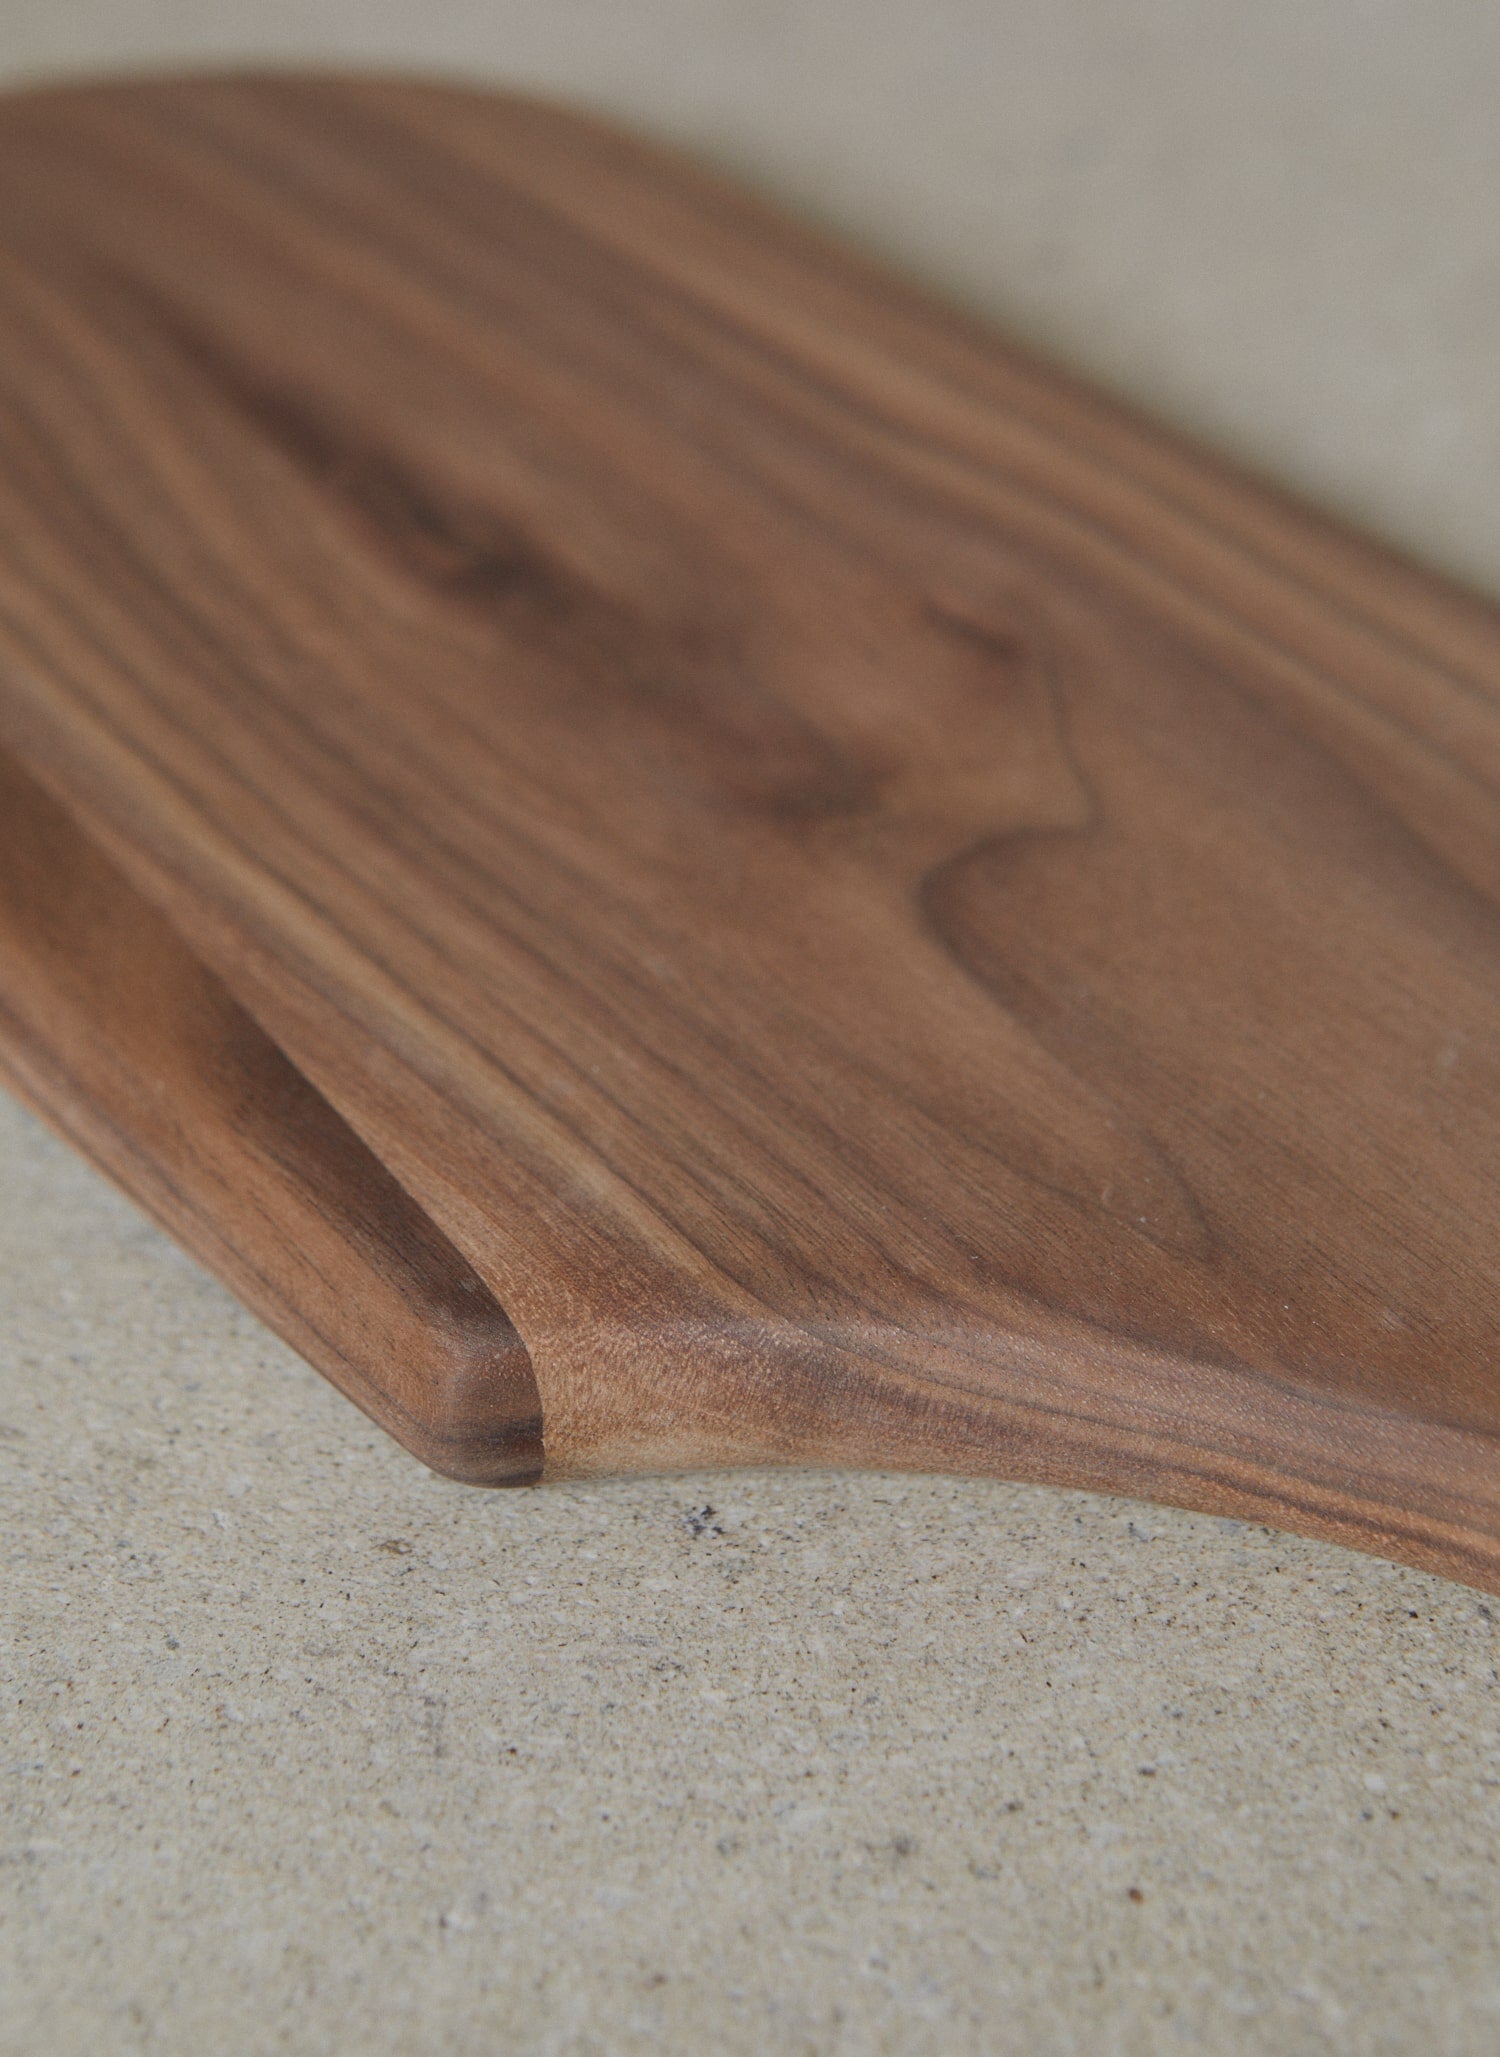 Wood grain detail of Walnut Shortboard.